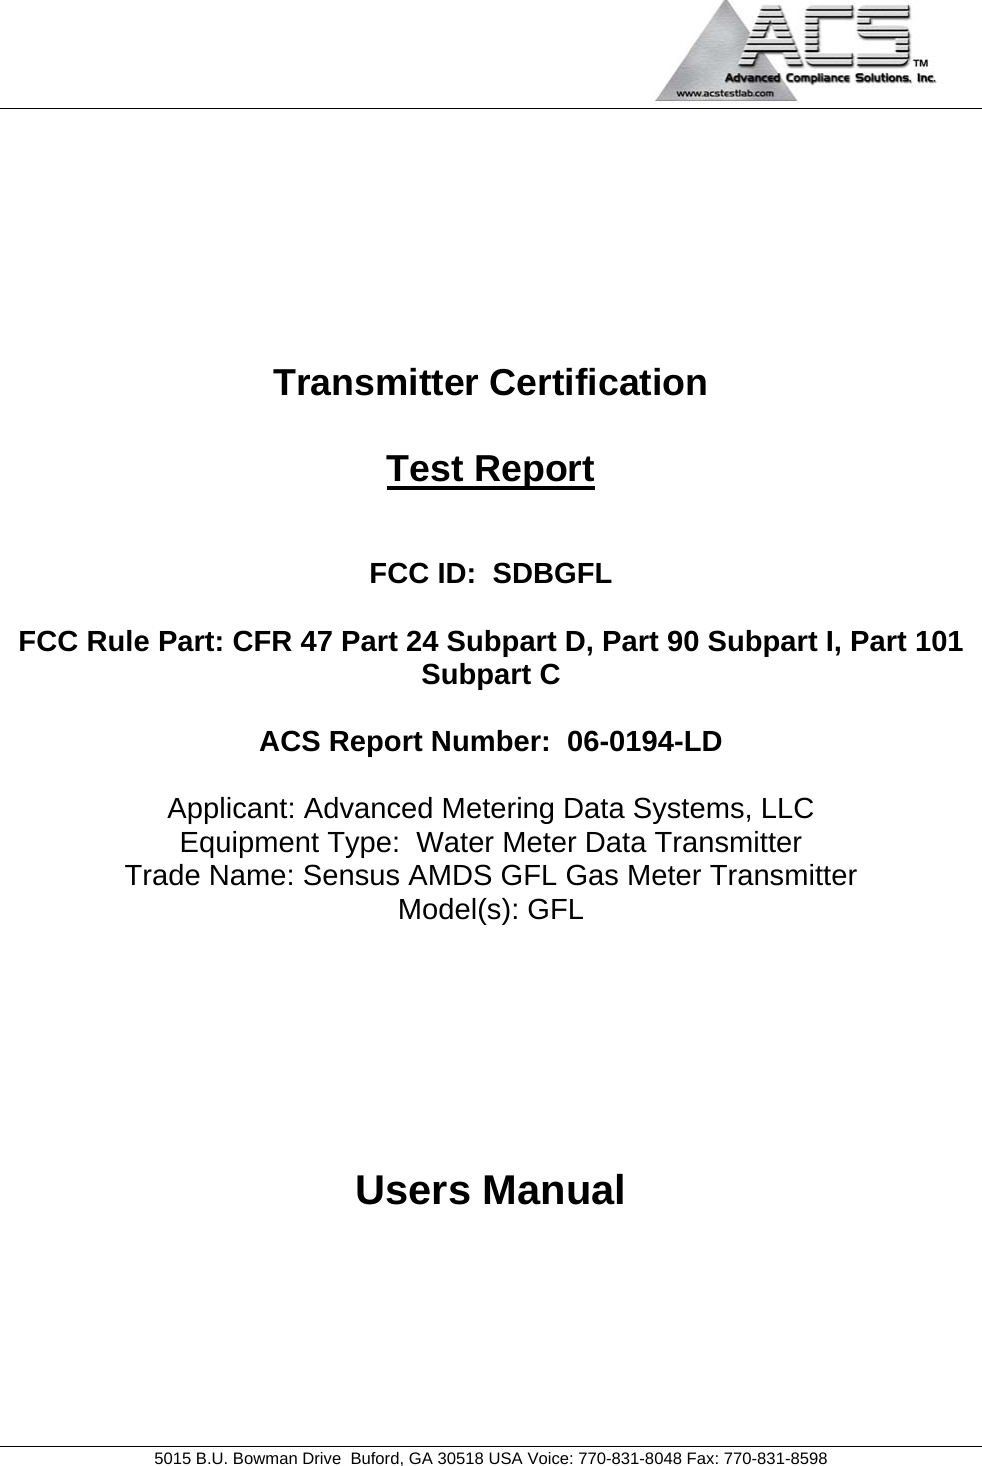 sensus-metering-systems-gfl-gas-meter-data-transmitter-user-manual-users-manual